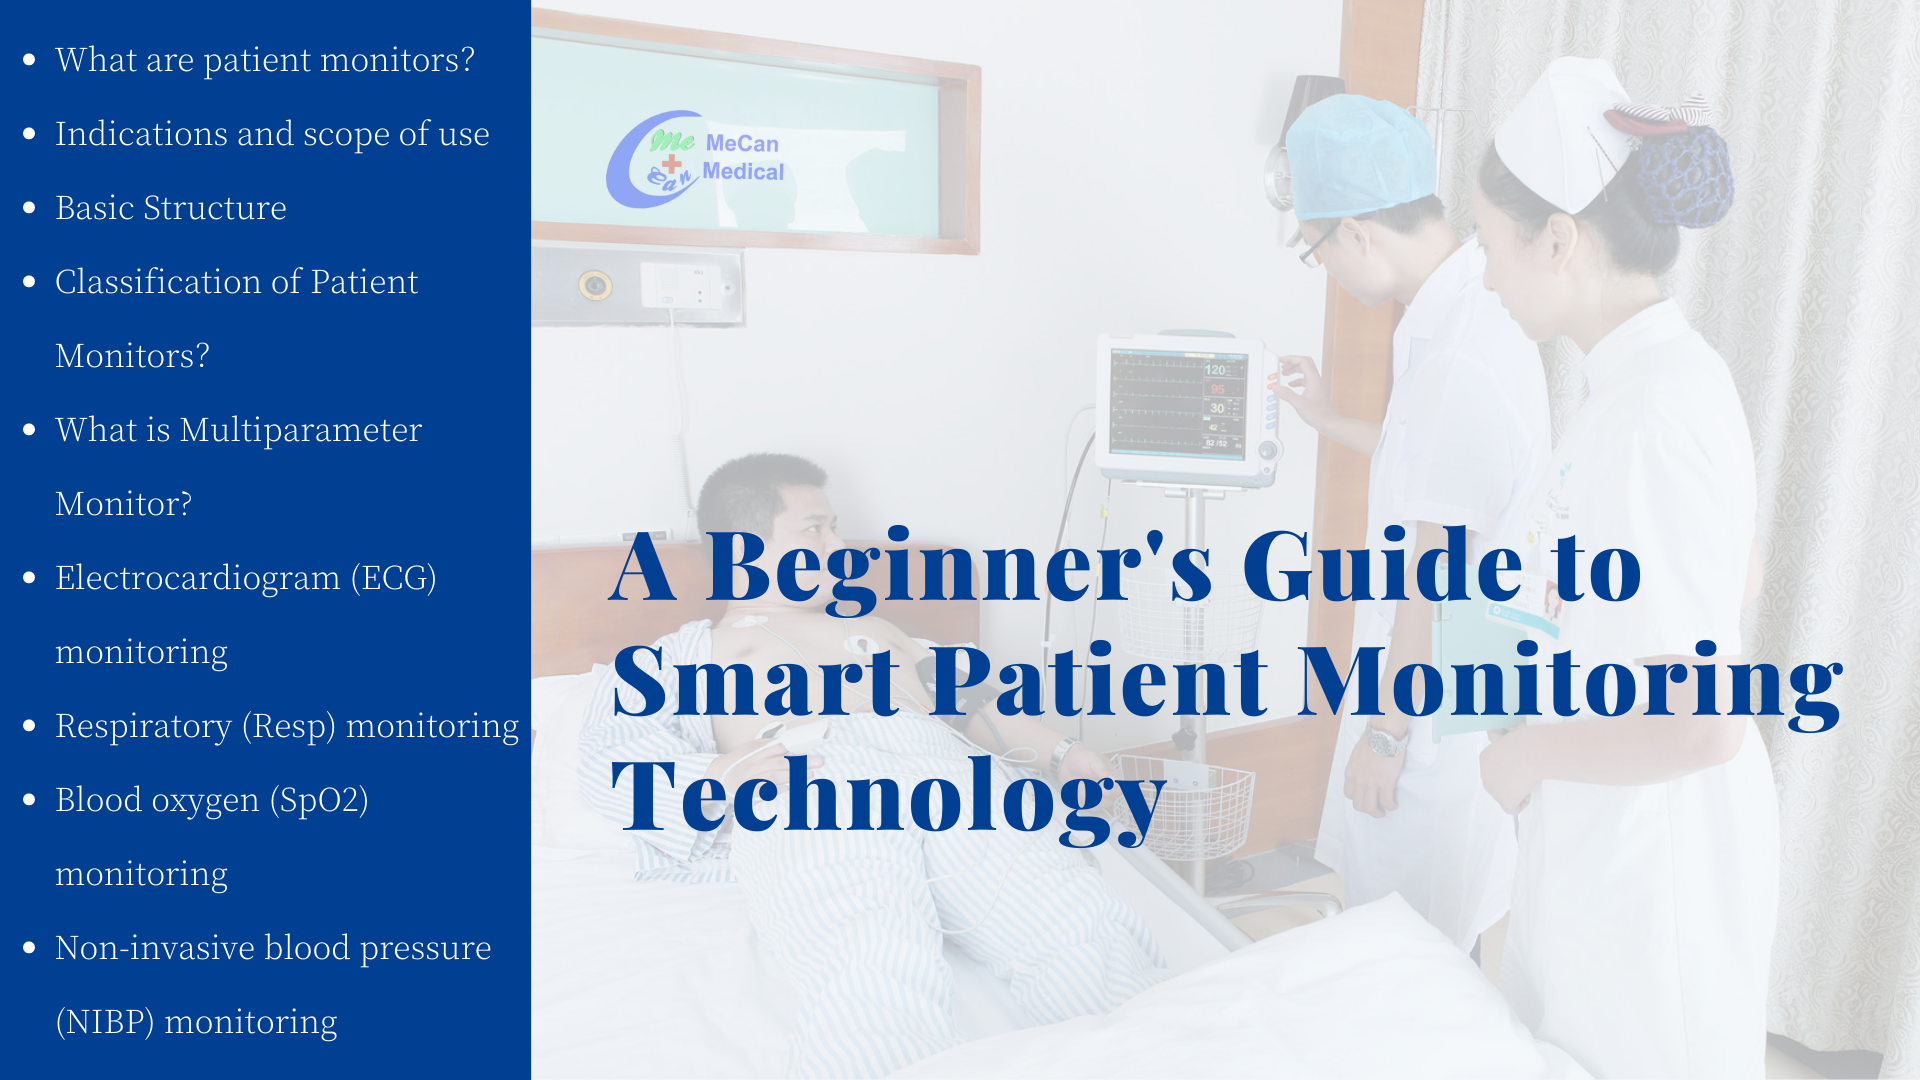 Një udhëzues fillestar për teknologjinë inteligjente të monitorimit të pacientëve